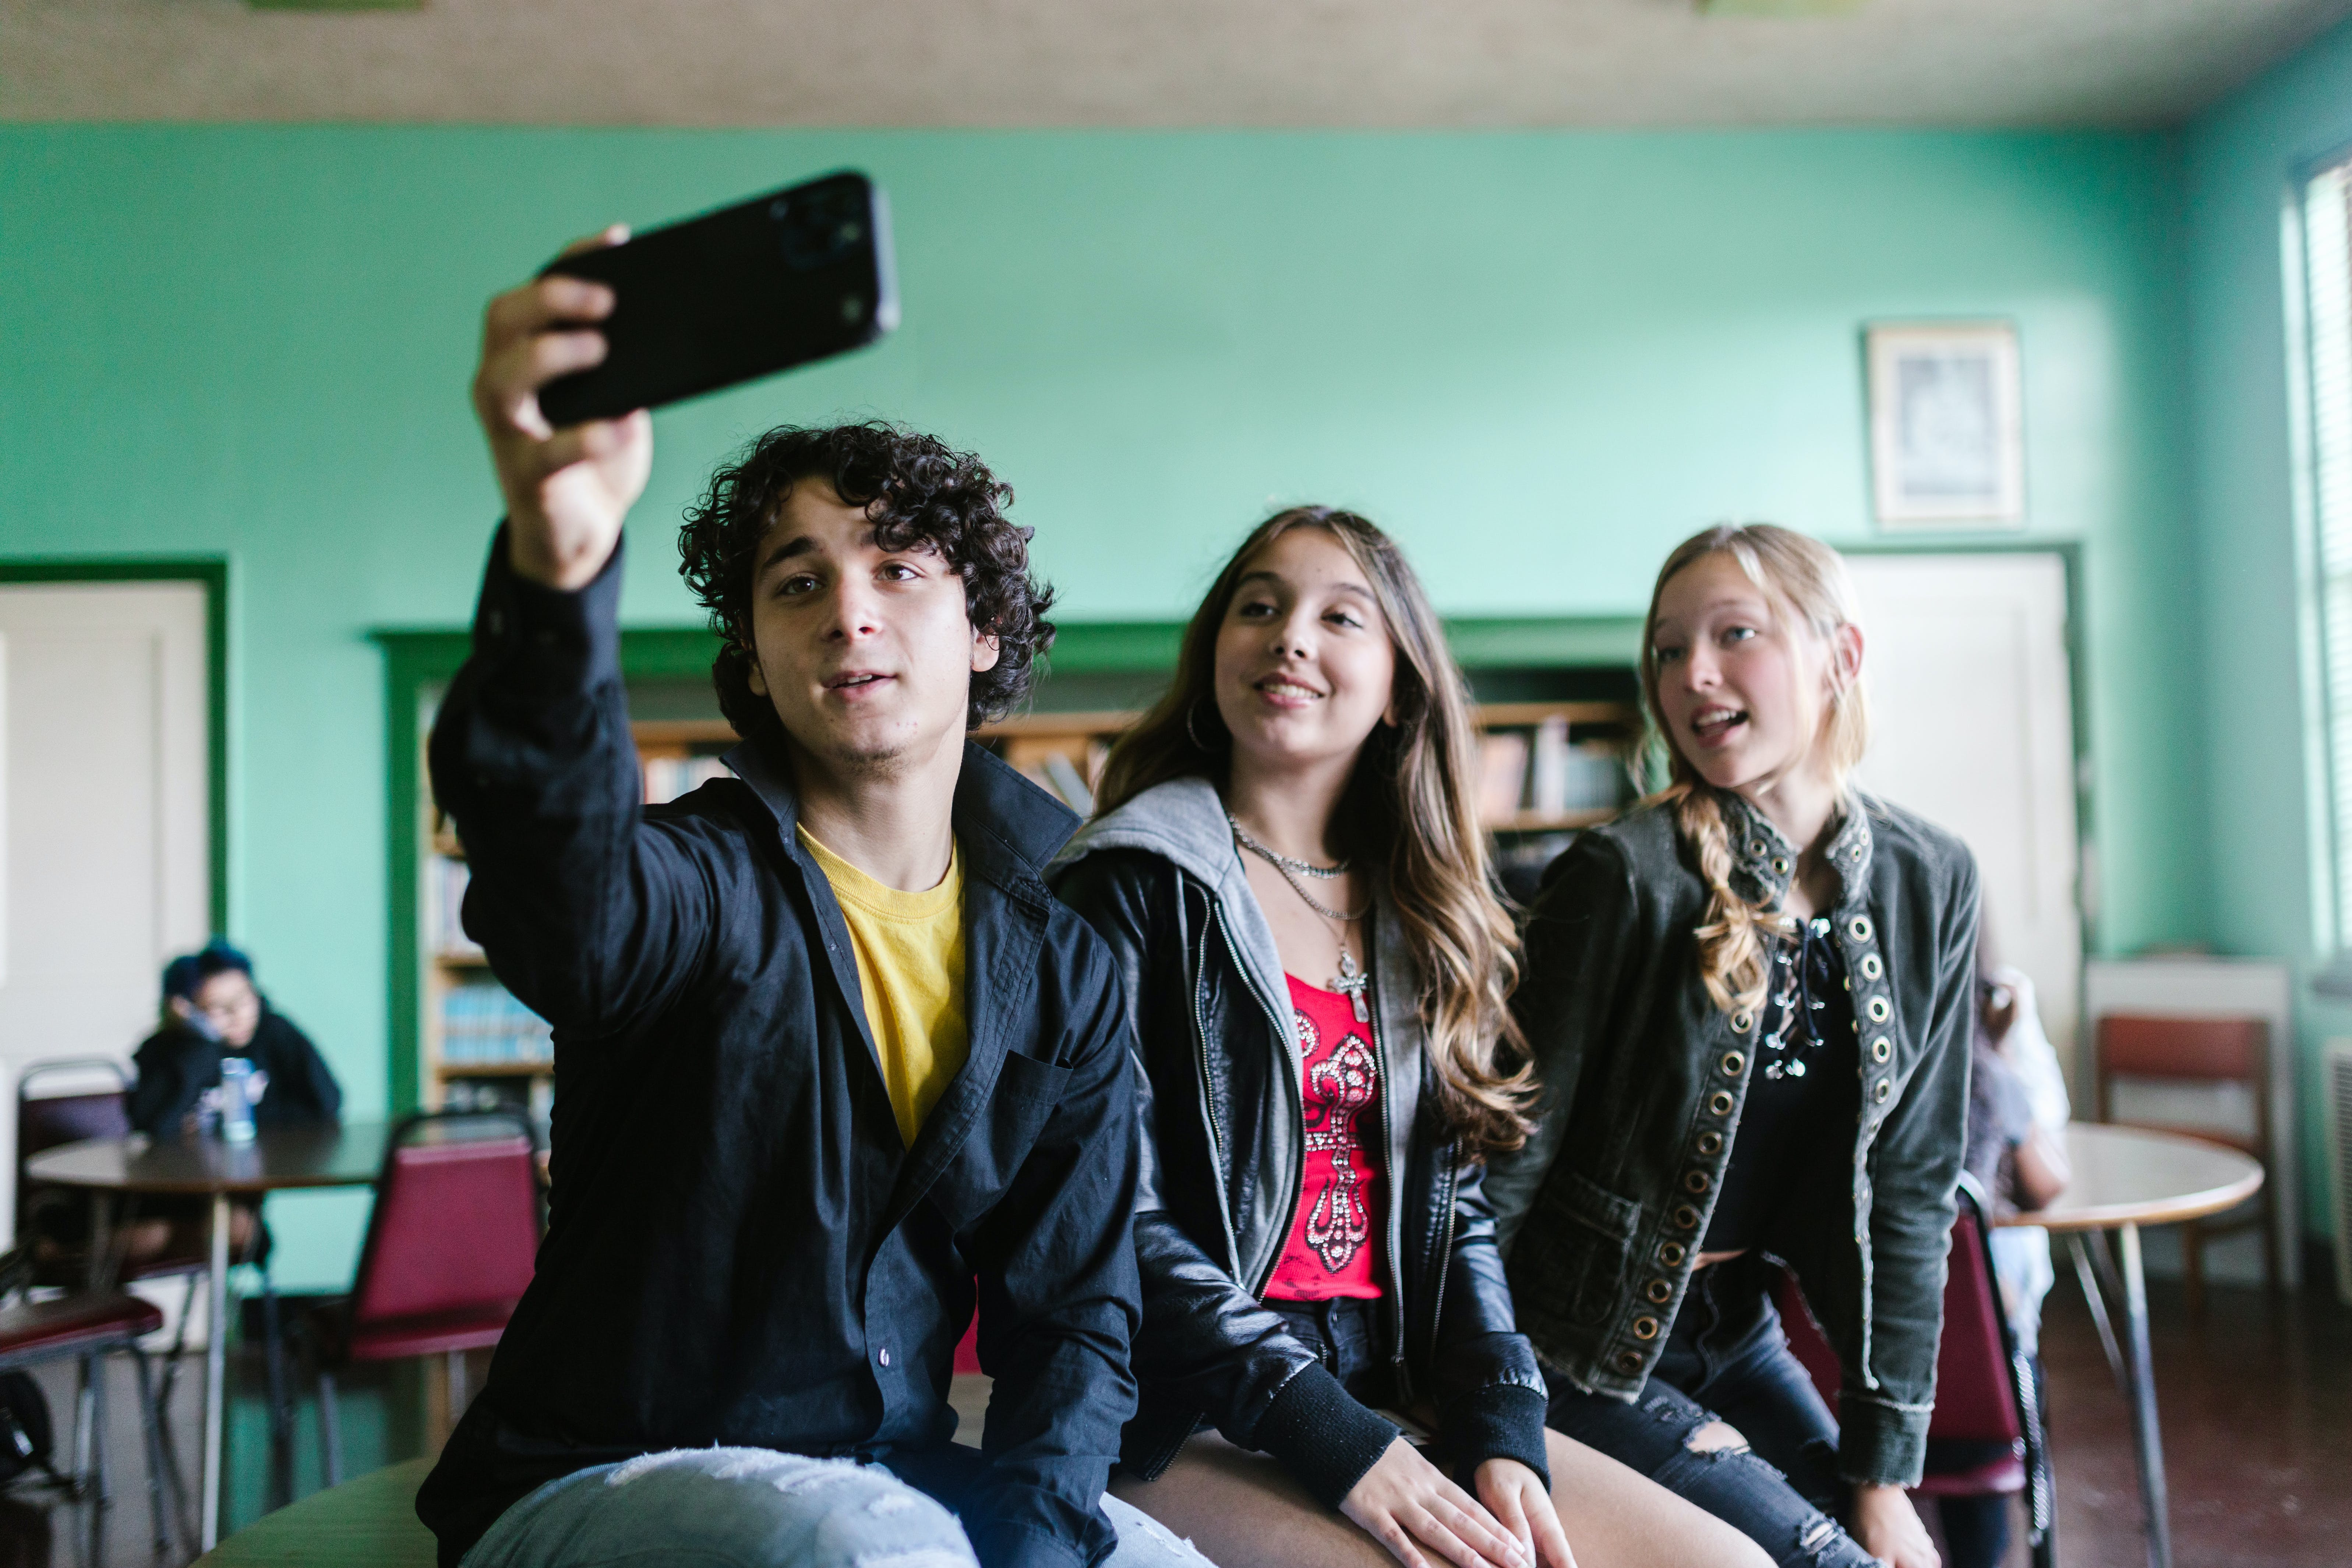 Un estudiante tomando un selfie junto a dos compañeras